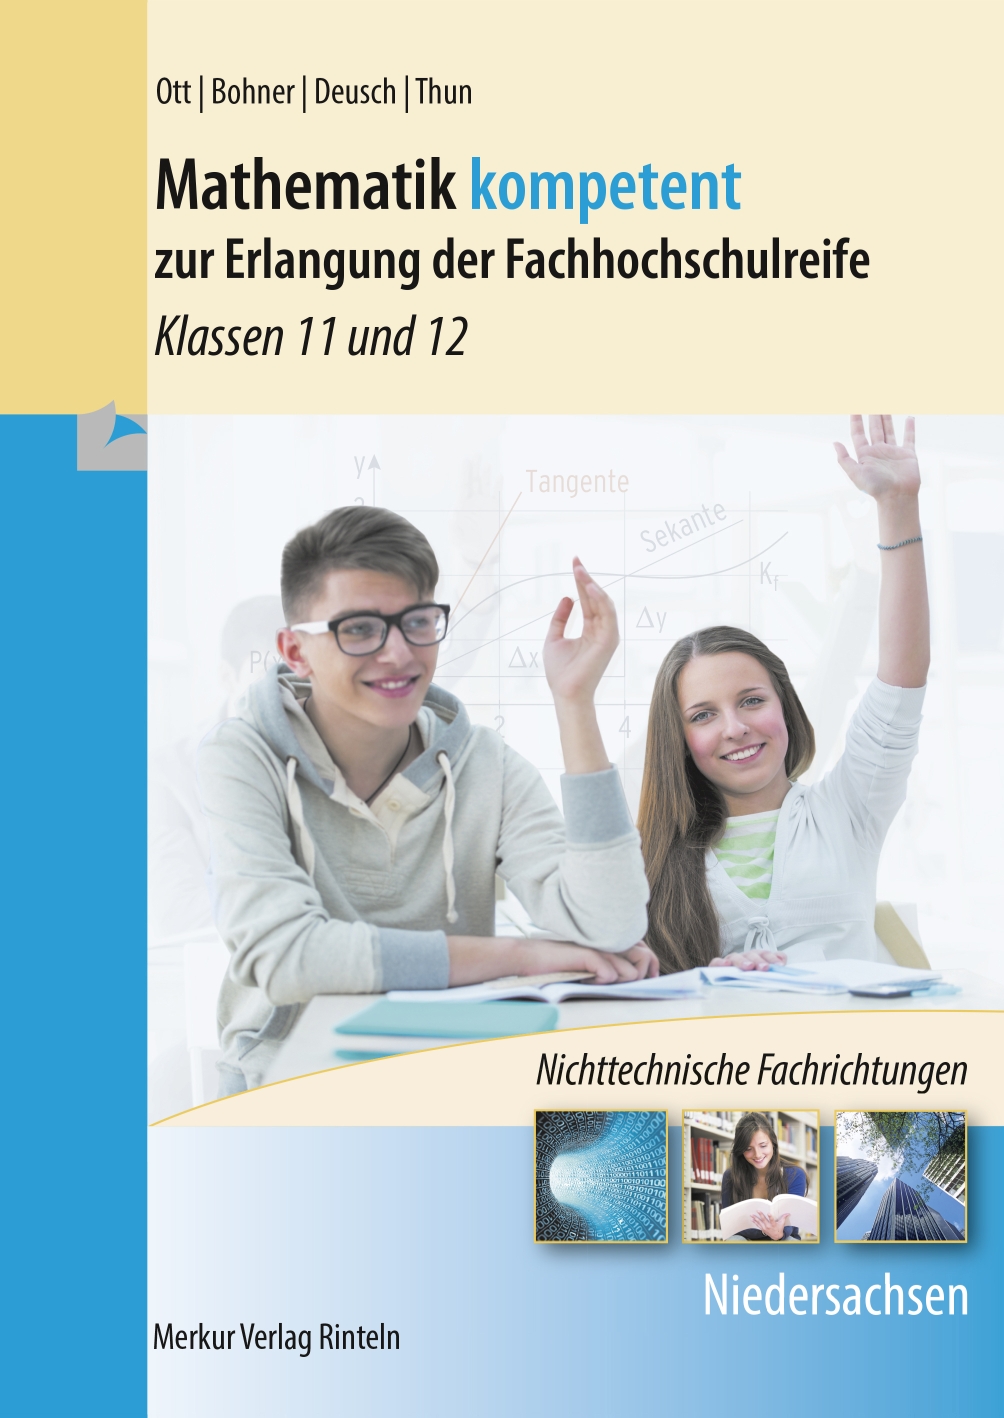 Mathematik kompetent zur Erlangung der Fachhochschulreife - Klassen 11 und 12 - nichttechnische Fachrichtungen - Niedersachsen